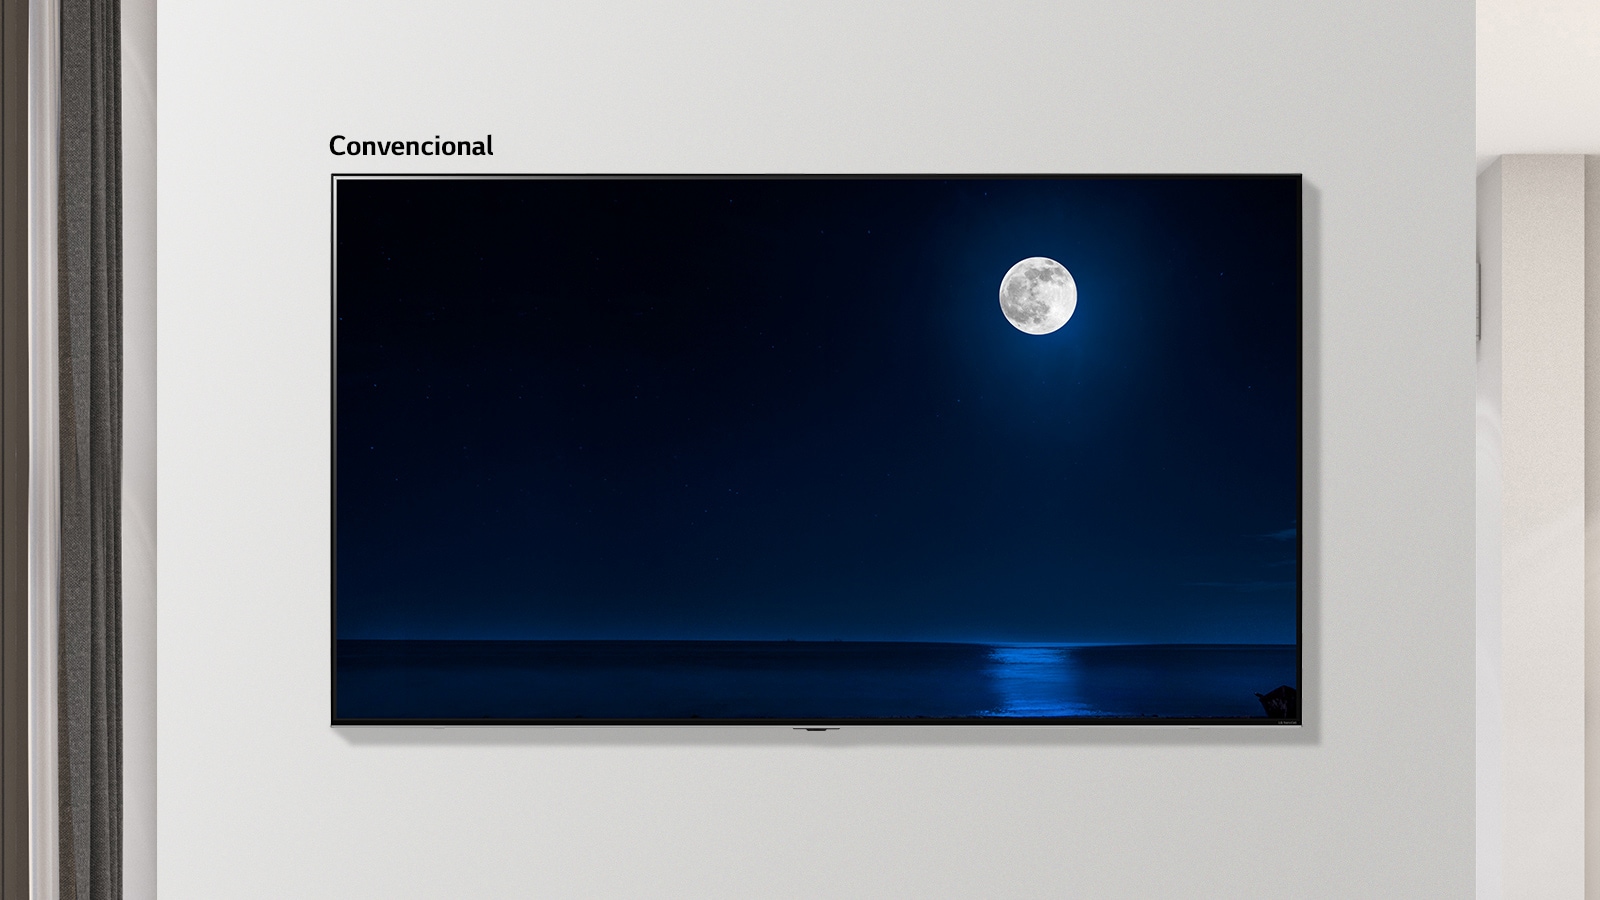 Escena oscura de una luna llena que brilla sobre el agua. La parte inferior izquierda muestra la imagen en un televisor convencional con halo y colores menos claros; la imagen circundante más grande muestra la escena en el televisor LG NanoCell.